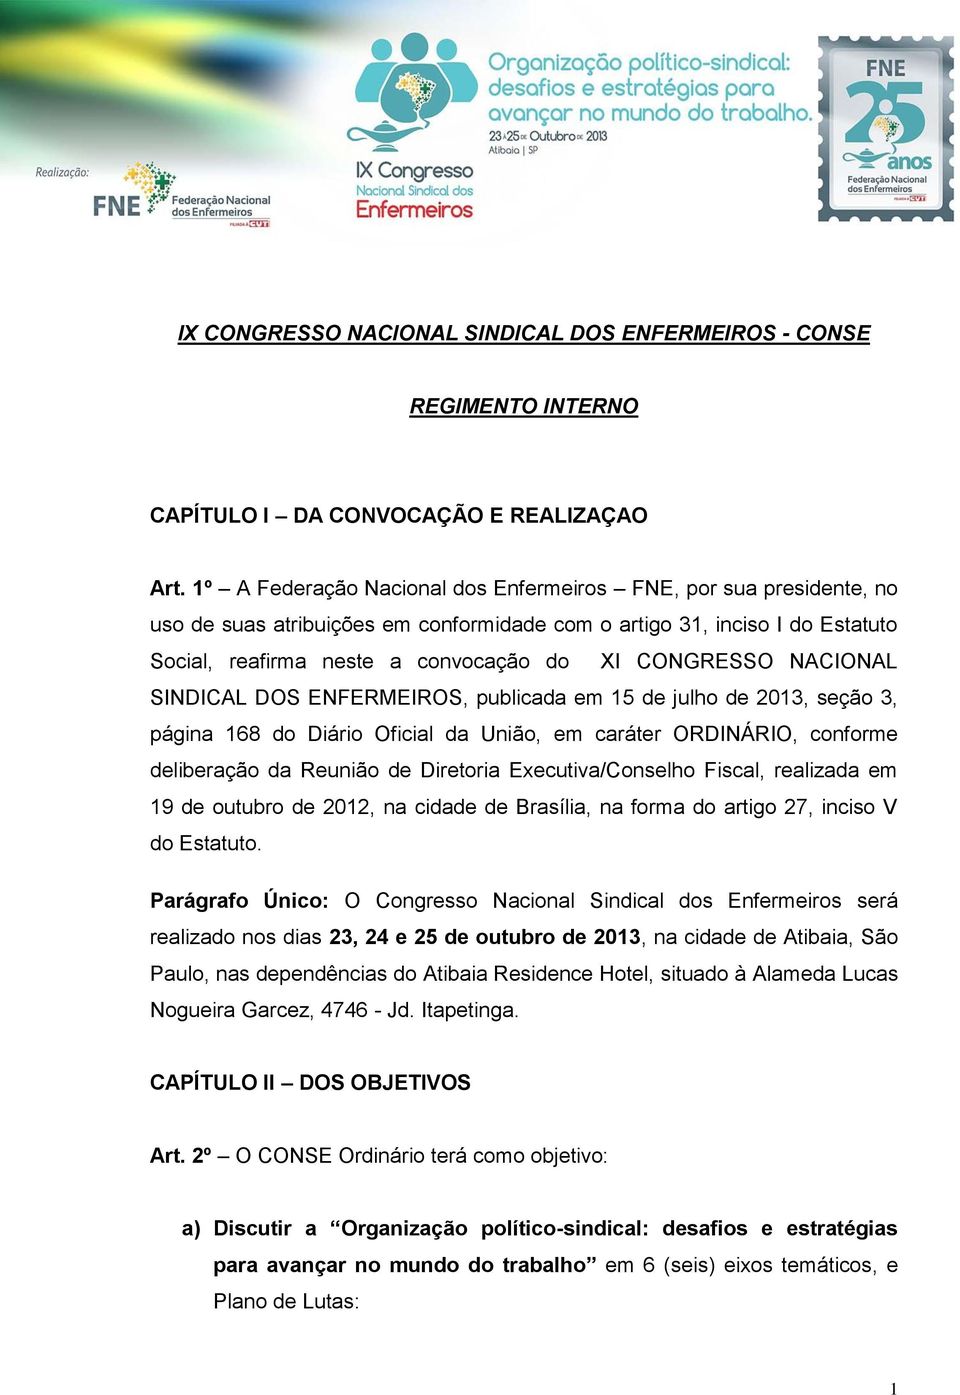 NACIONAL SINDICAL DOS ENFERMEIROS, publicada em 15 de julho de 2013, seção 3, página 168 do Diário Oficial da União, em caráter ORDINÁRIO, conforme deliberação da Reunião de Diretoria